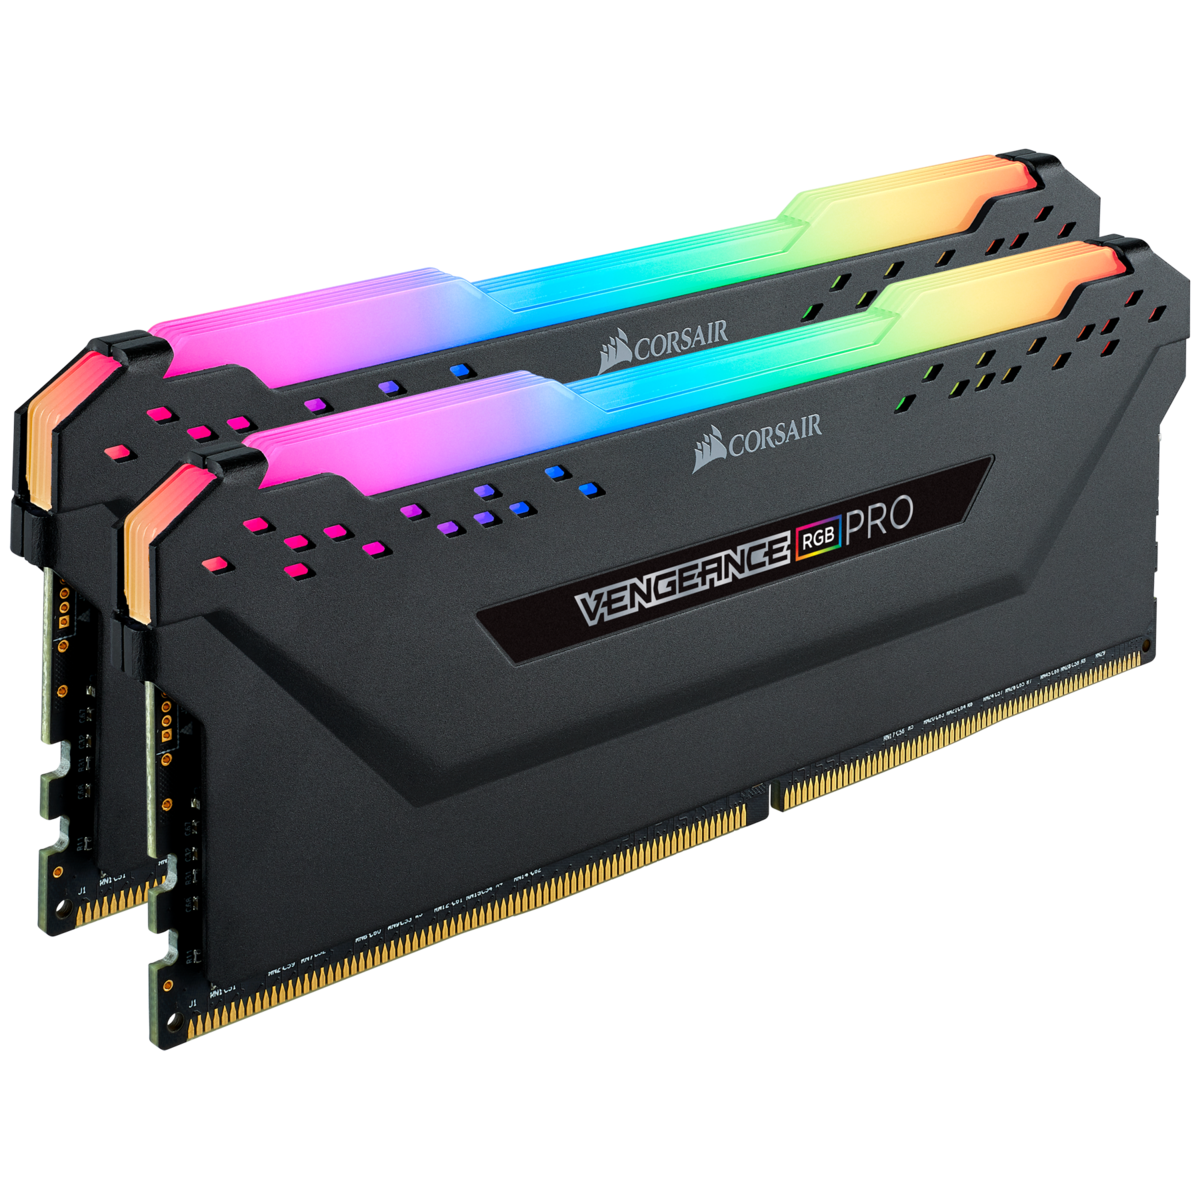 MEMORIA RAM CORSAIR VENGEANCE RGB PRO WHITE 16GB DDR4 KIT 2X8GB 3000MHZ RGB LED CMW16GX4M2C3000C15